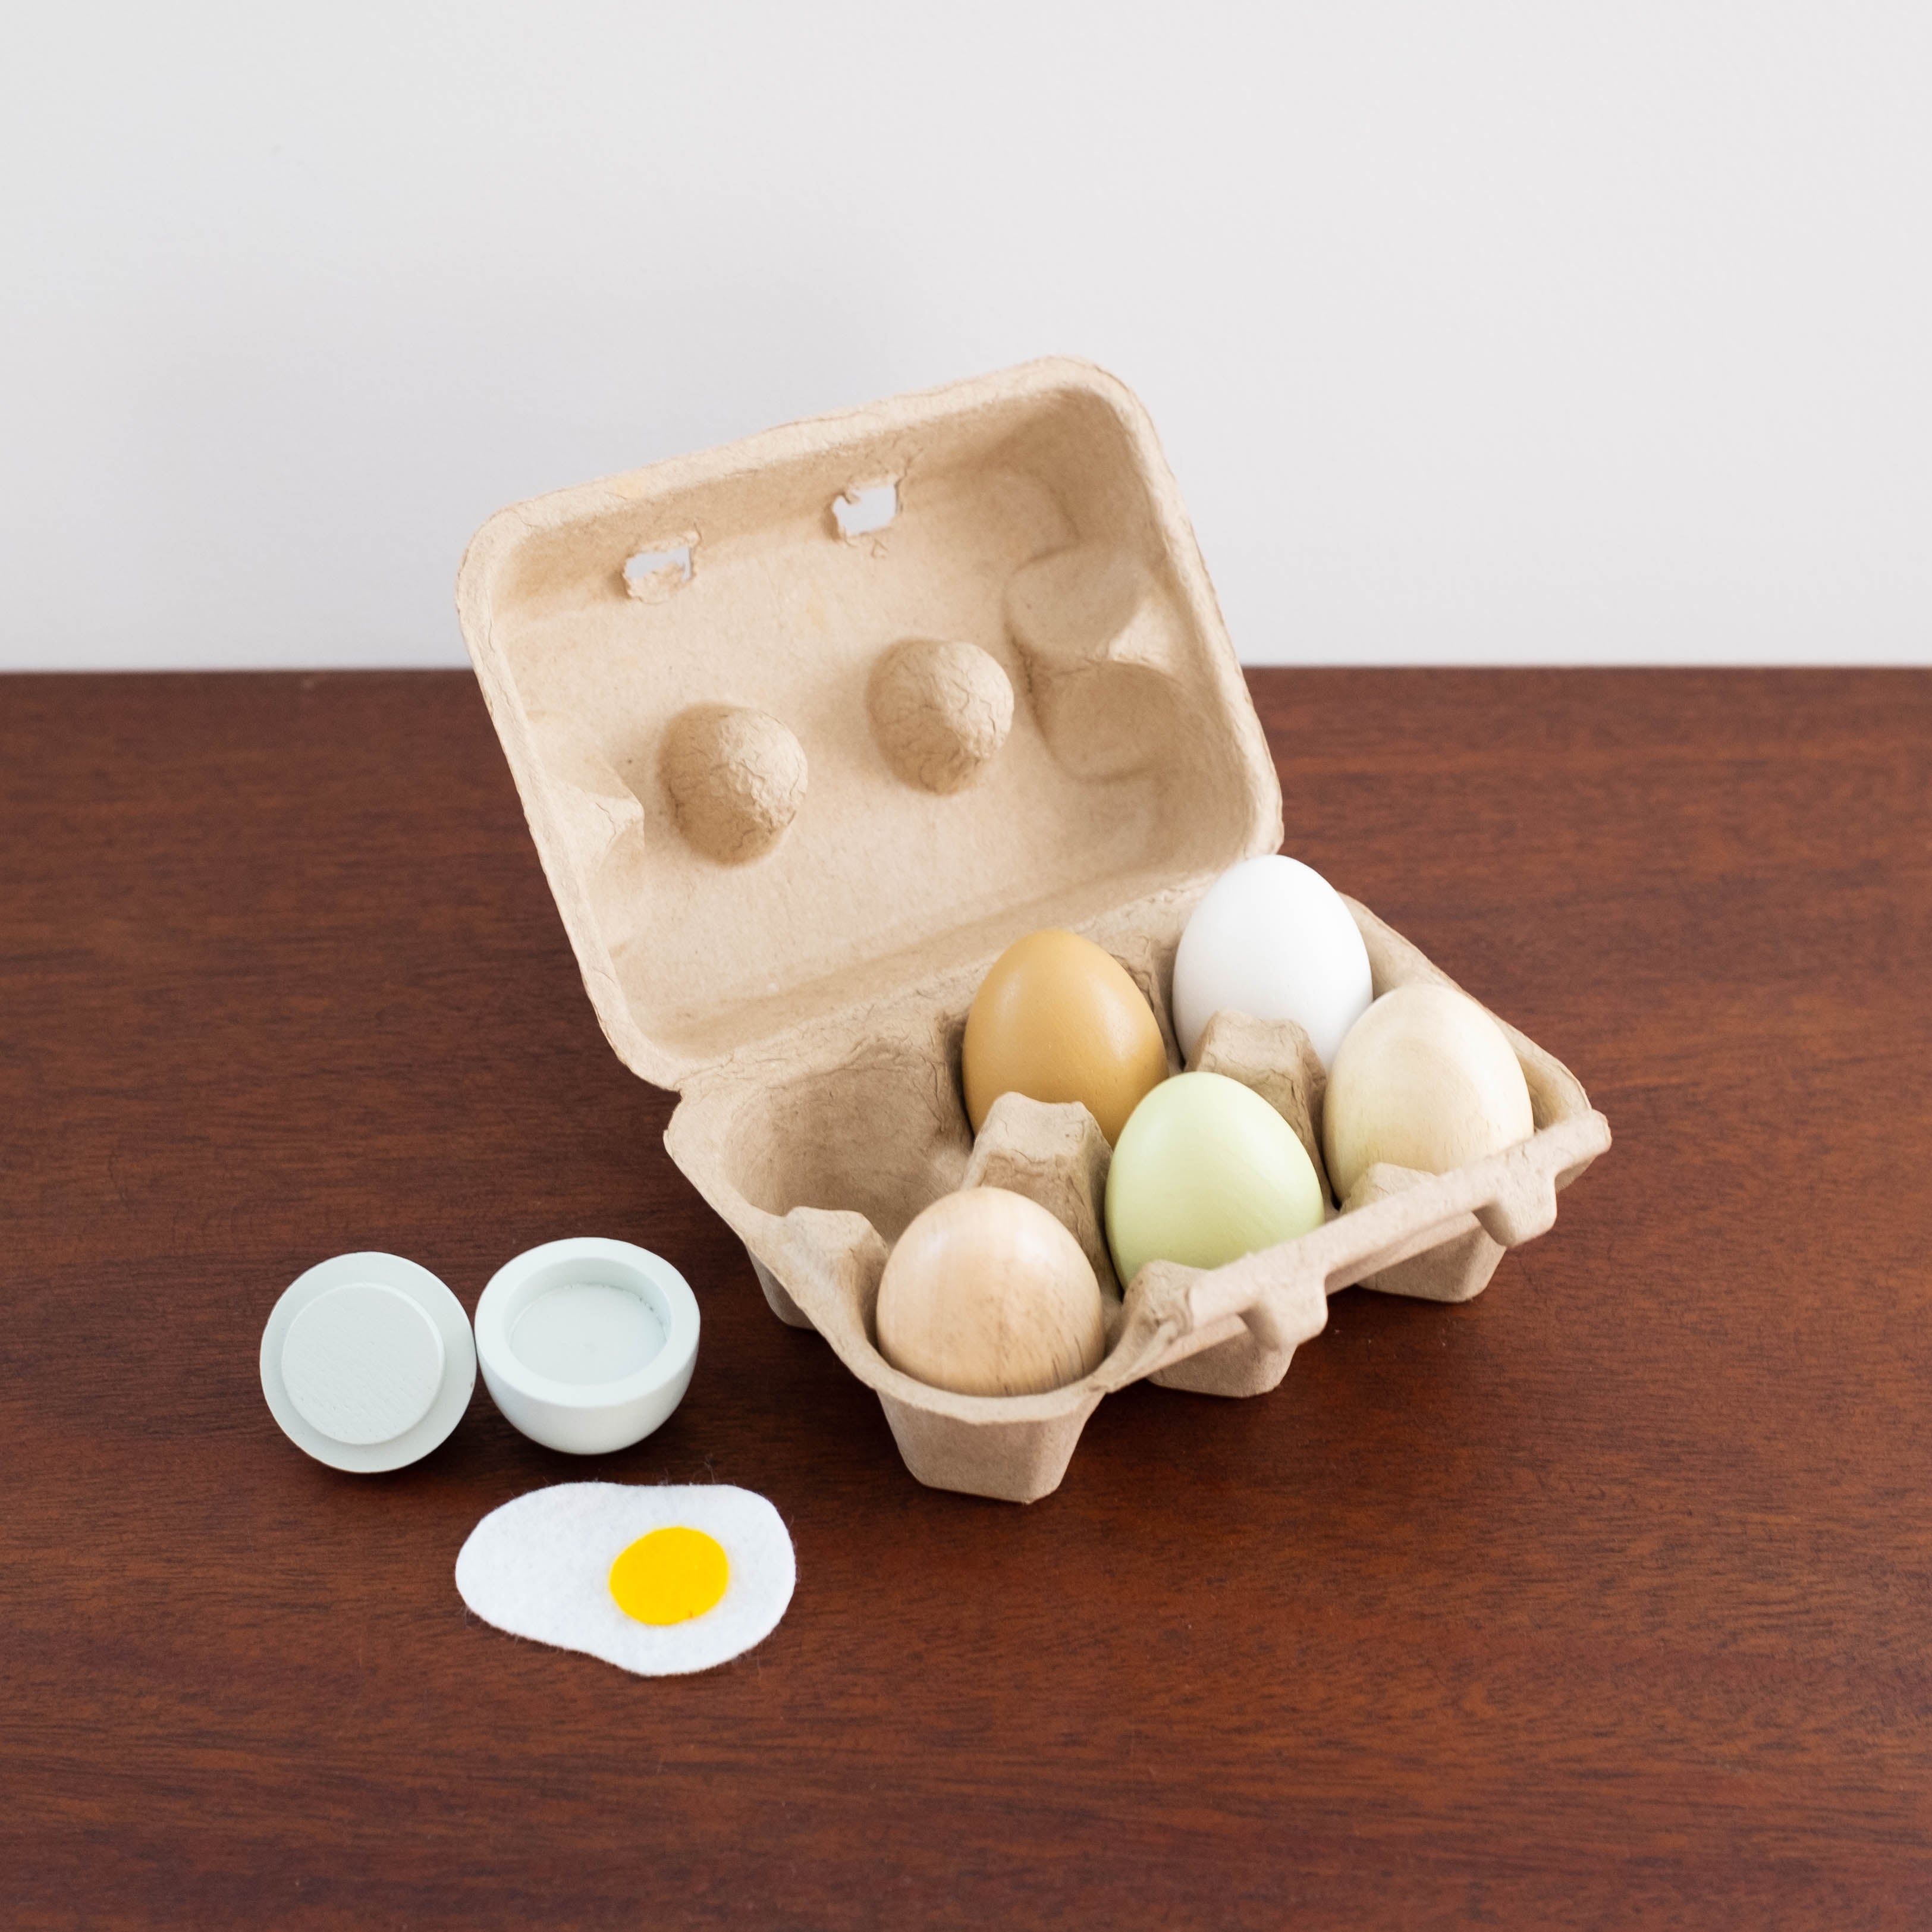 Wooden Eggs in a Carton